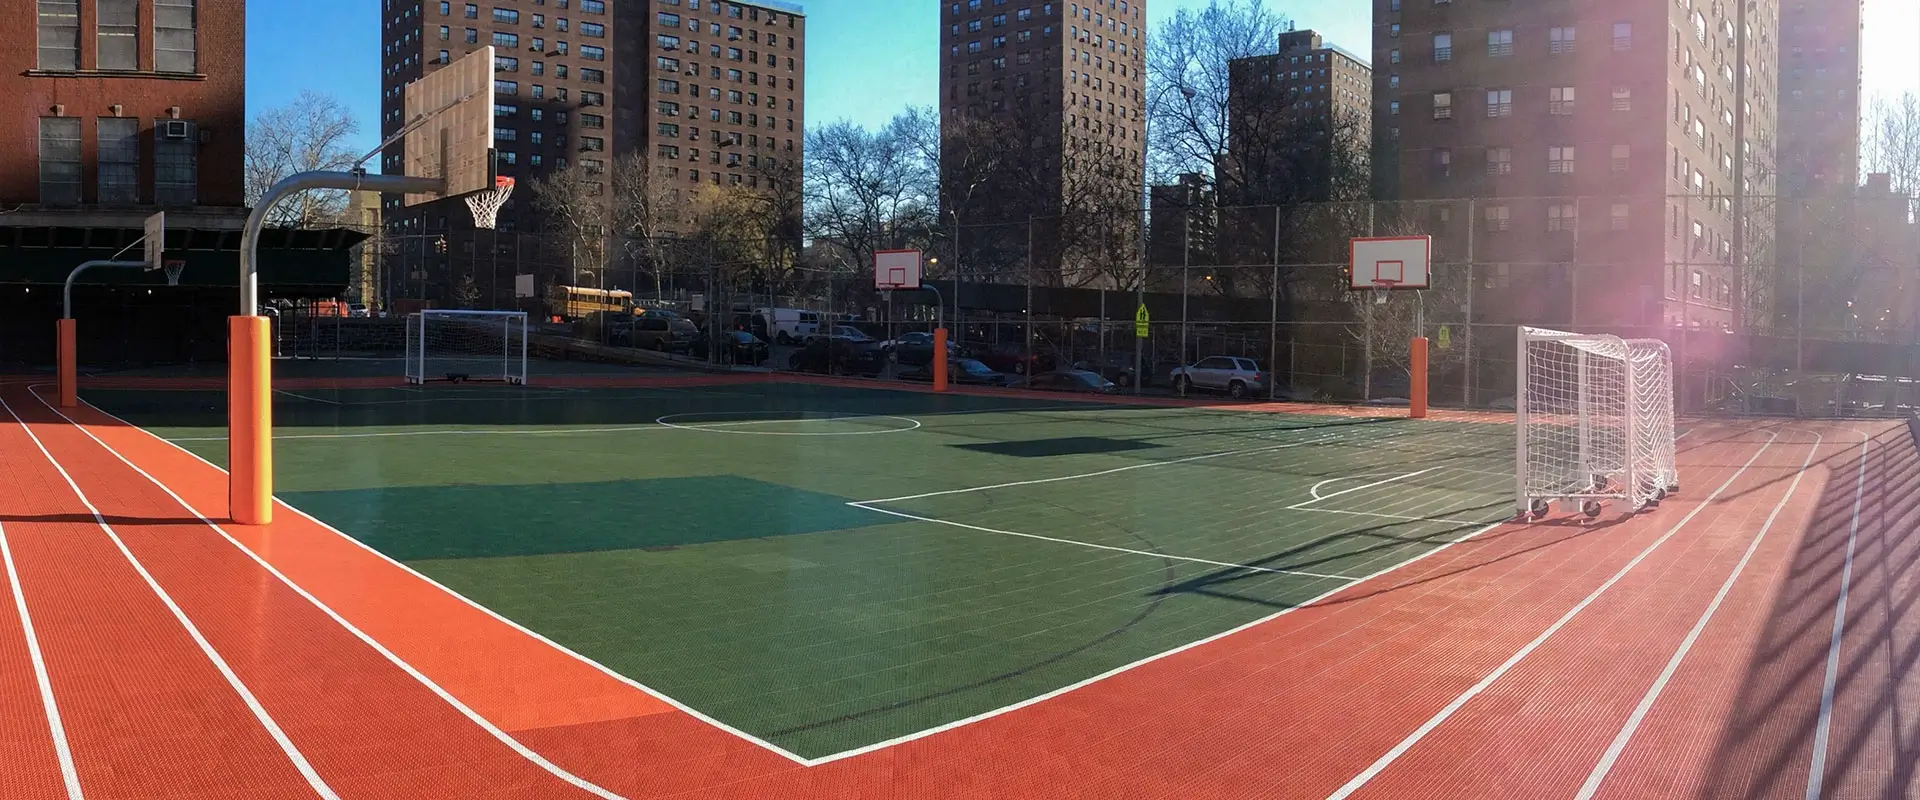 Futsal in a park in New York